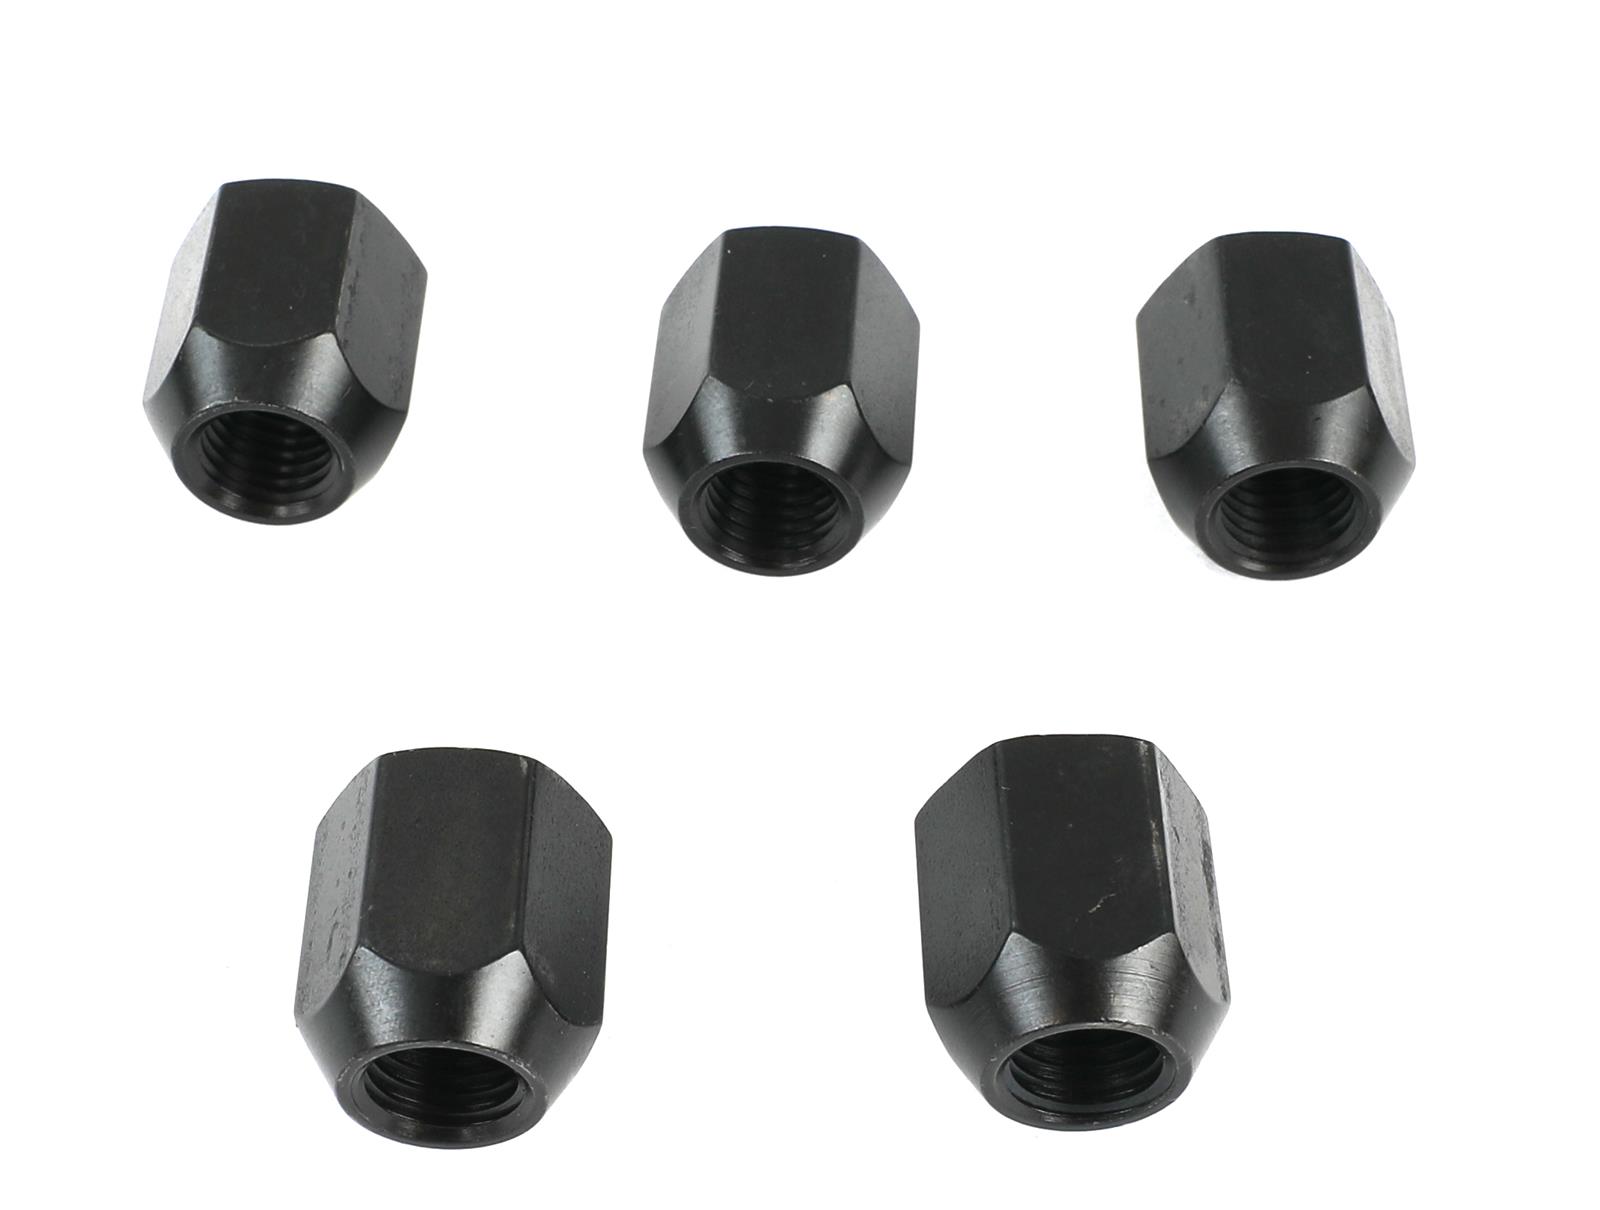 Moroso 46345 Steel Lug Nuts Lug Nuts (12mm x 1.5, 19mm Hex, 5pk)